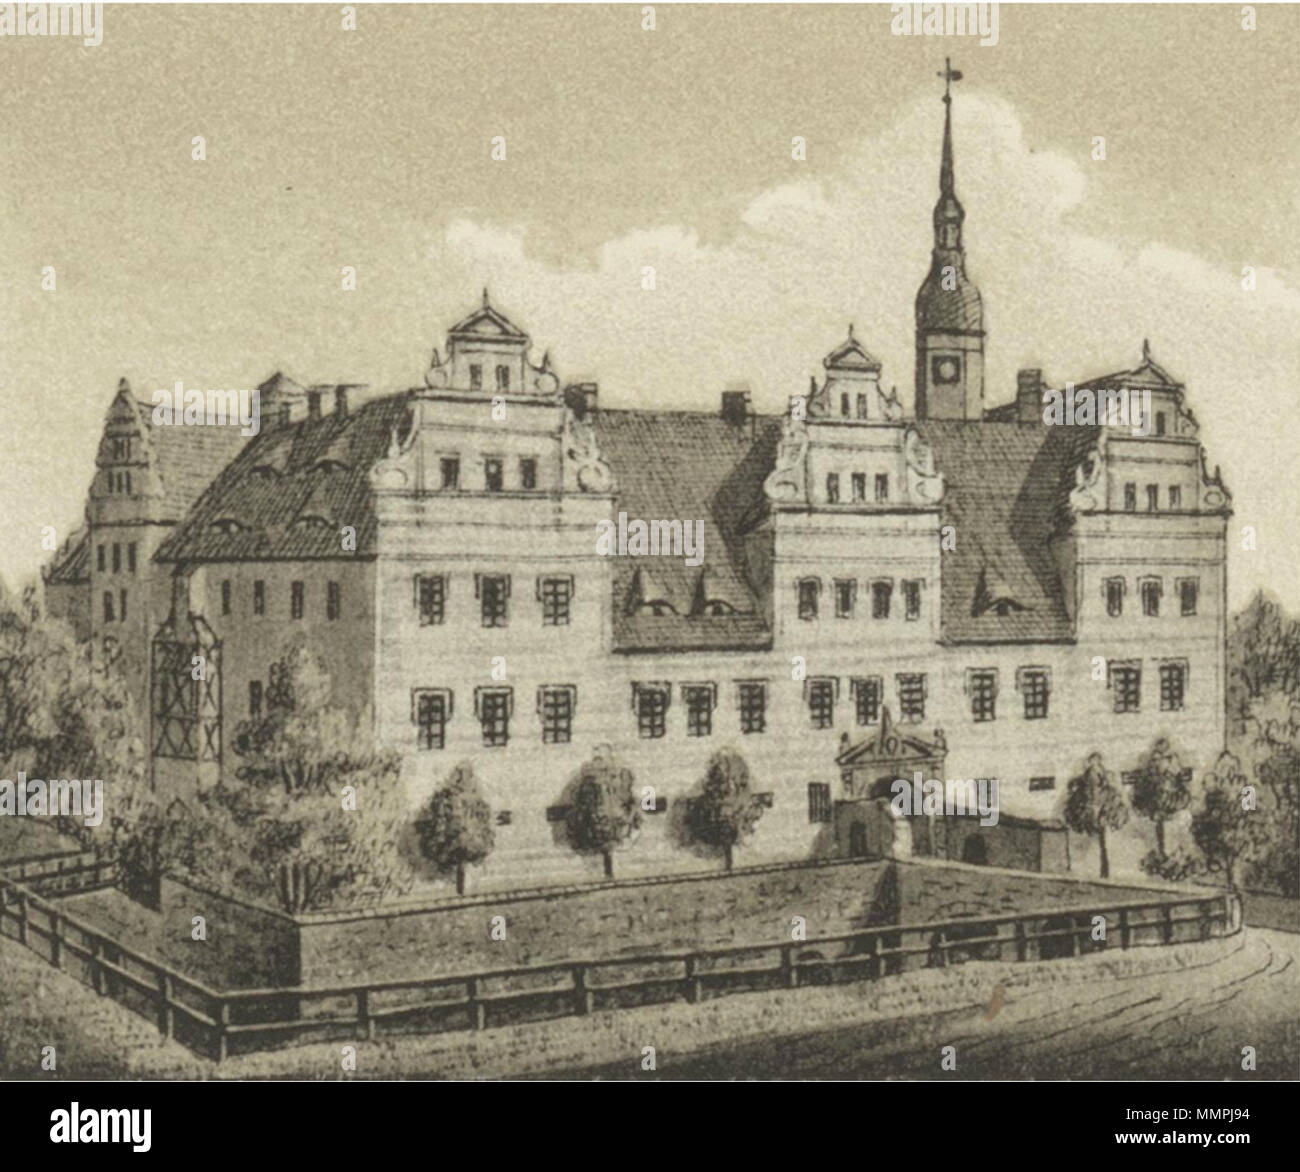 Ansichten preussischer Städte- Dobrilugk-Kirchhain. Das Schloss zu Dobrilugk. Ehregott Zschille 1891 (Alter Fritz) Stock Photo